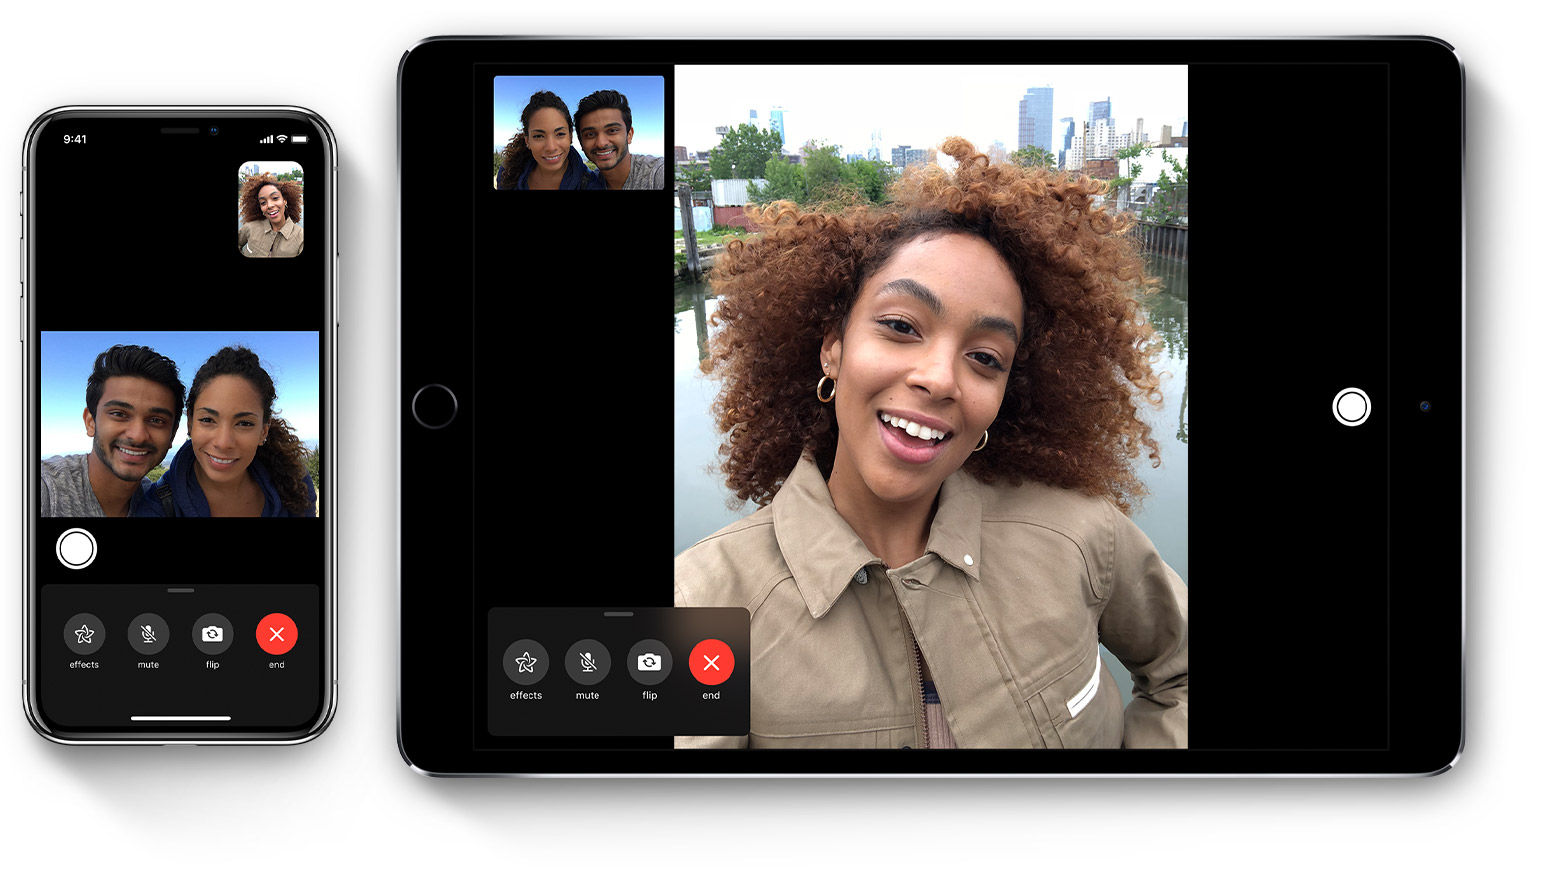 Apple recompensará al joven que encontró el fallo de seguridad de FaceTime